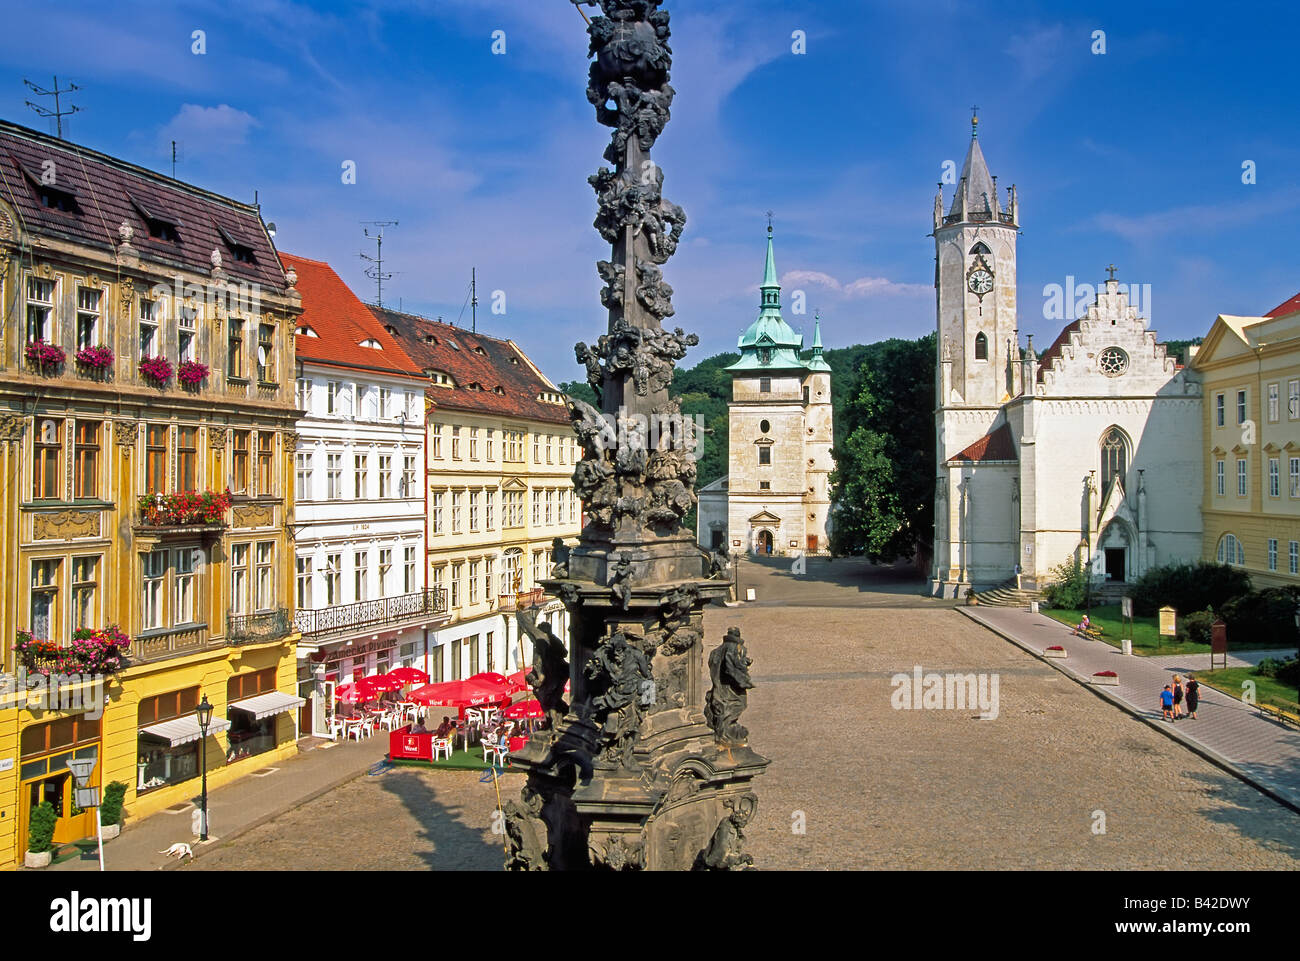 Czech Republic, North Bohemia, Teplice, Town Square Stock Photo